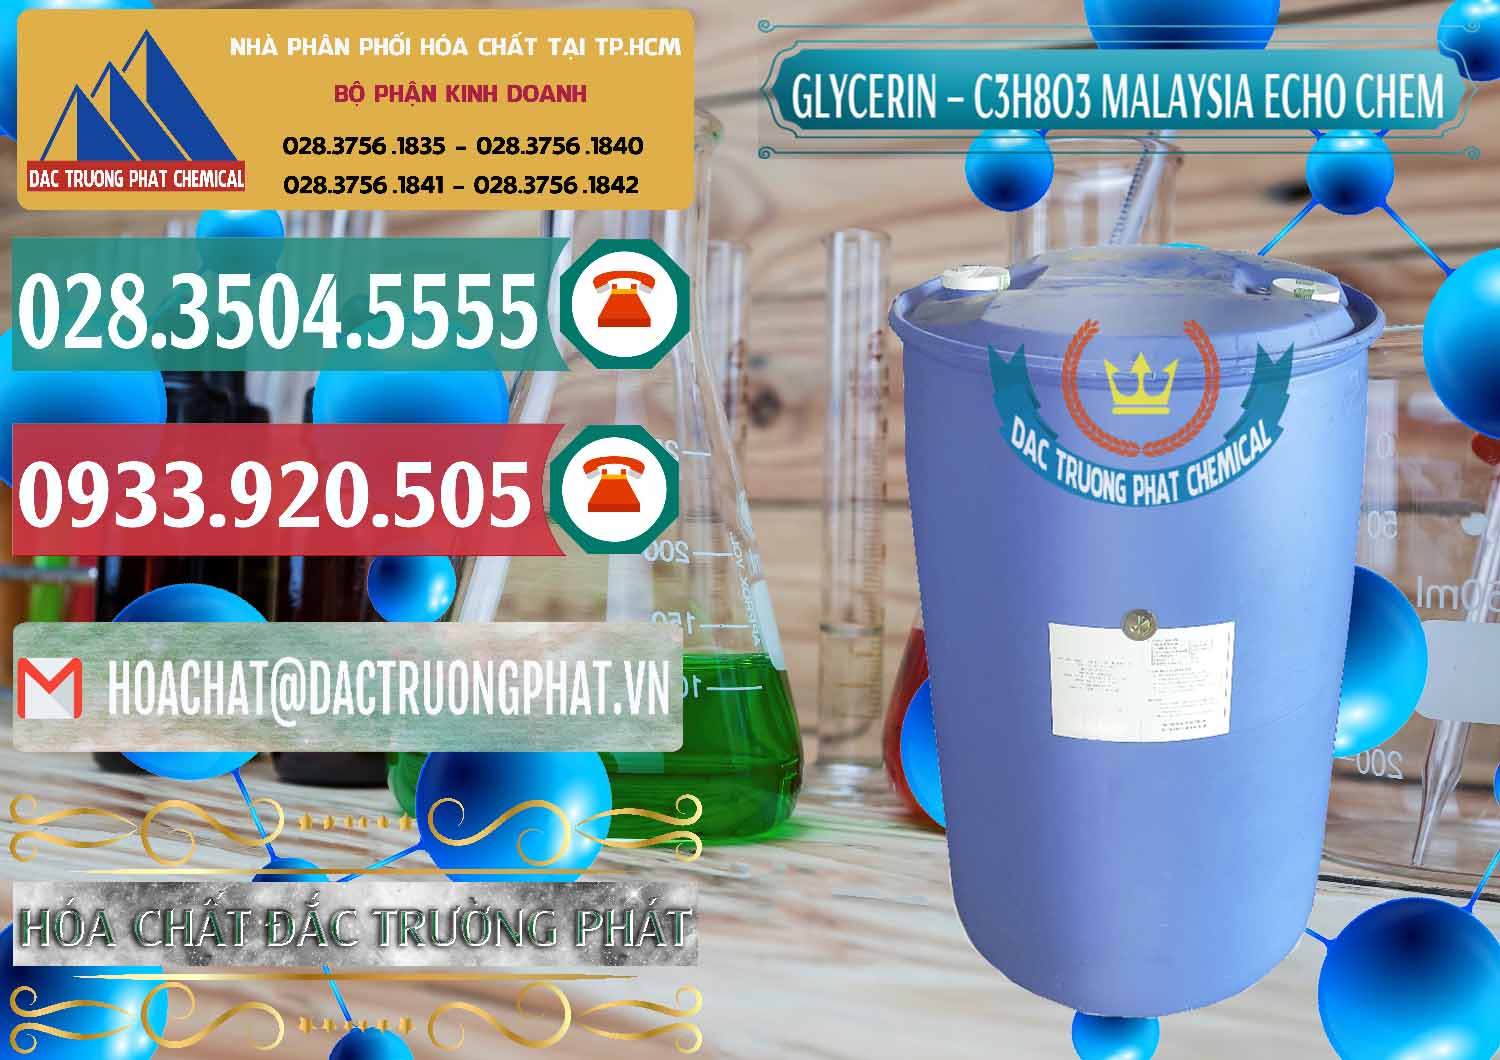 Công ty bán ( cung ứng ) C3H8O3 - Glycerin 99.7% Echo Chem Malaysia - 0273 - Cty chuyên phân phối _ cung ứng hóa chất tại TP.HCM - muabanhoachat.vn